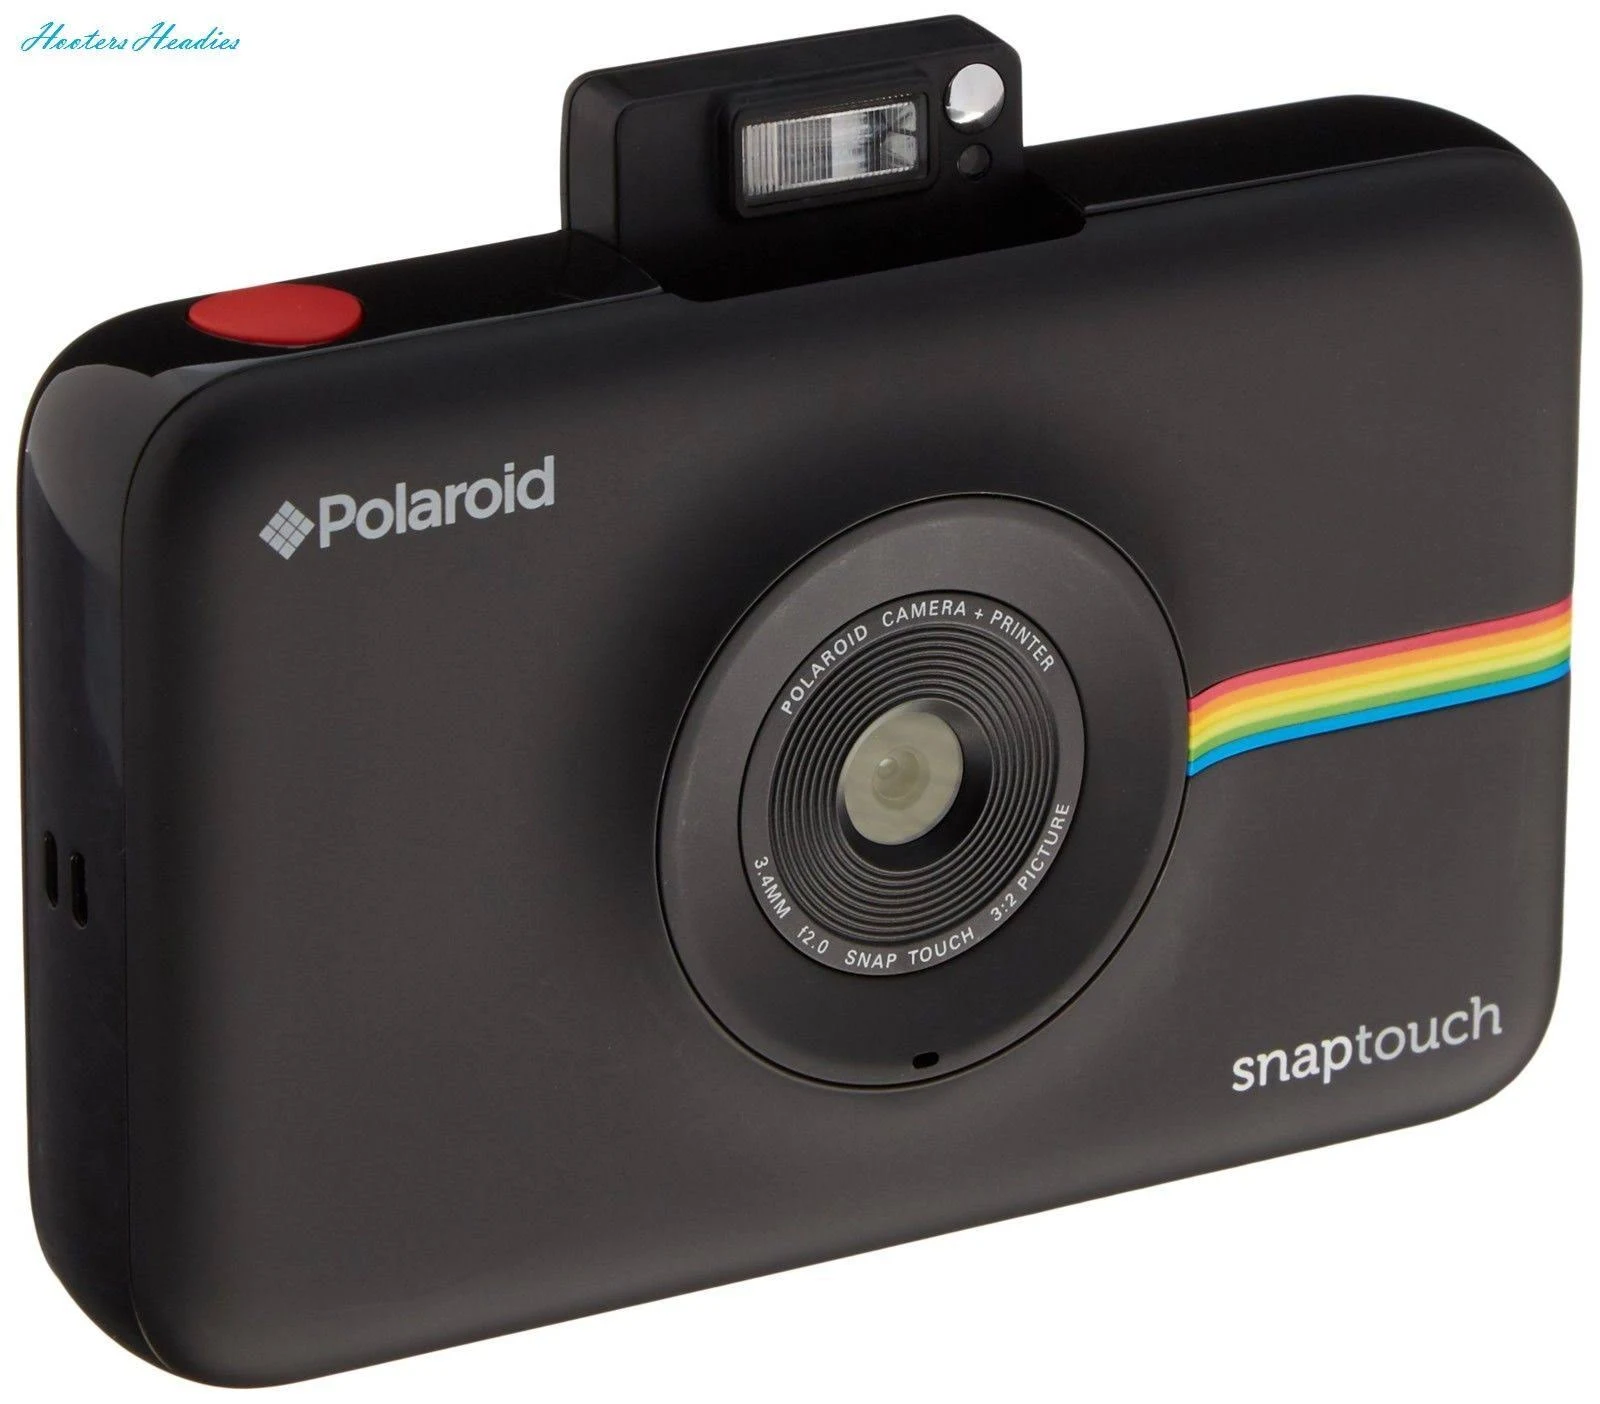 Polaroid Snap Touch Sofortdruck-Digitalkamera mit LCD-Display (schwarz) mit Zink Zero Ink Printing-Technologie